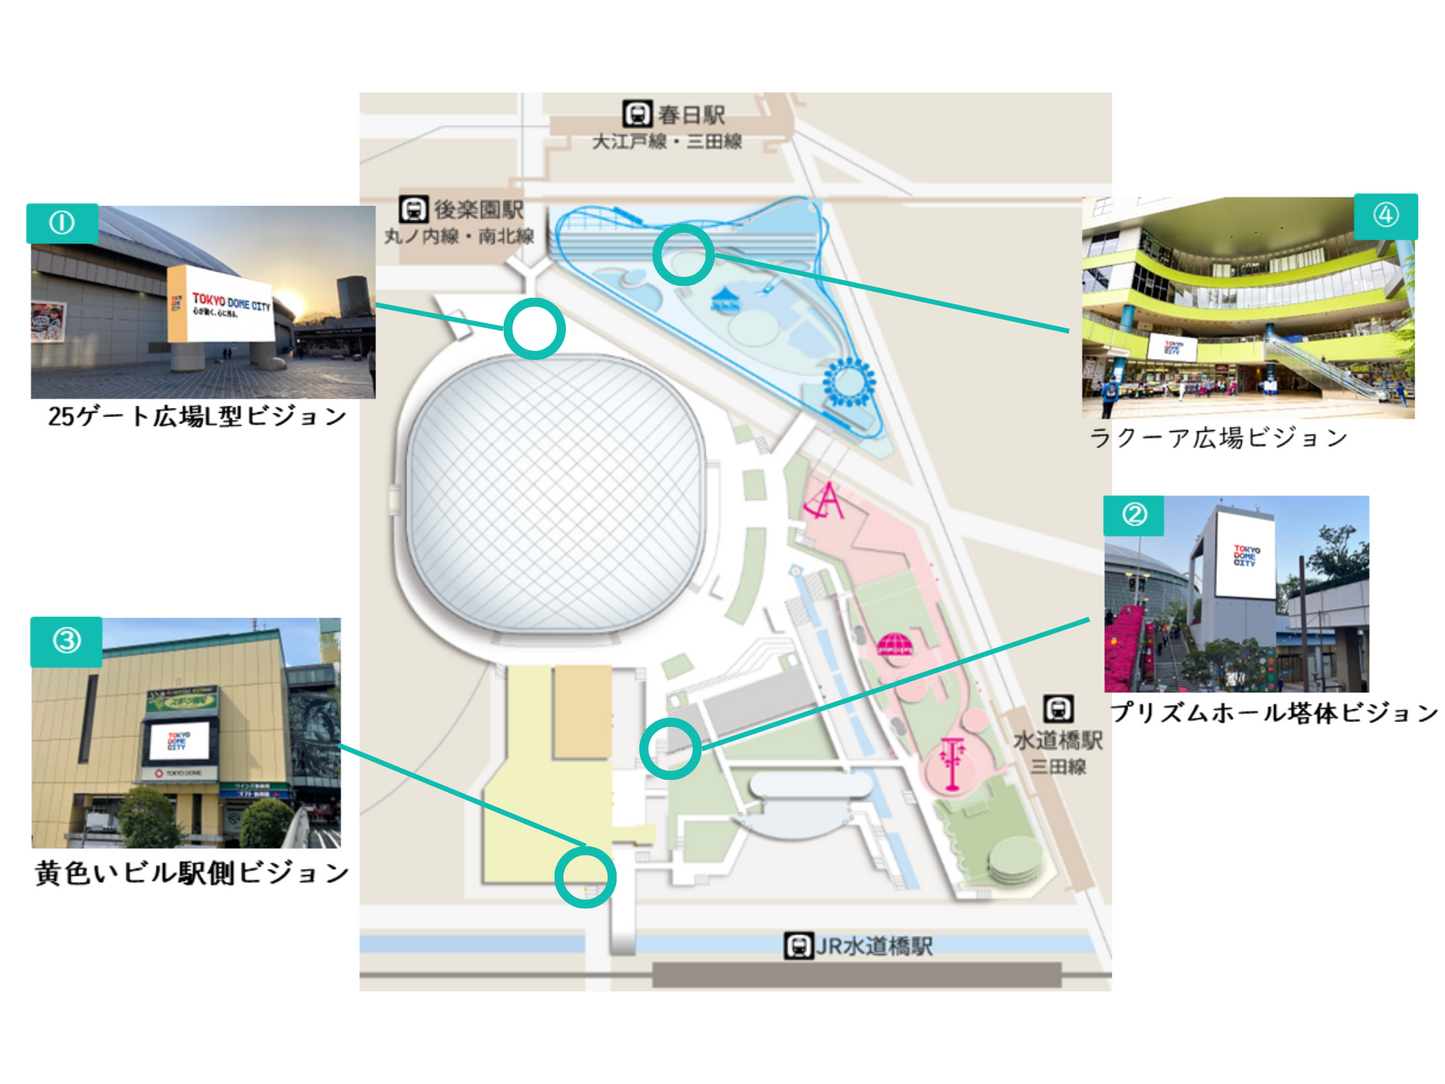 東京ドームシティビジョンズ 基本セット開放  プリズムホール塔体ビジョン